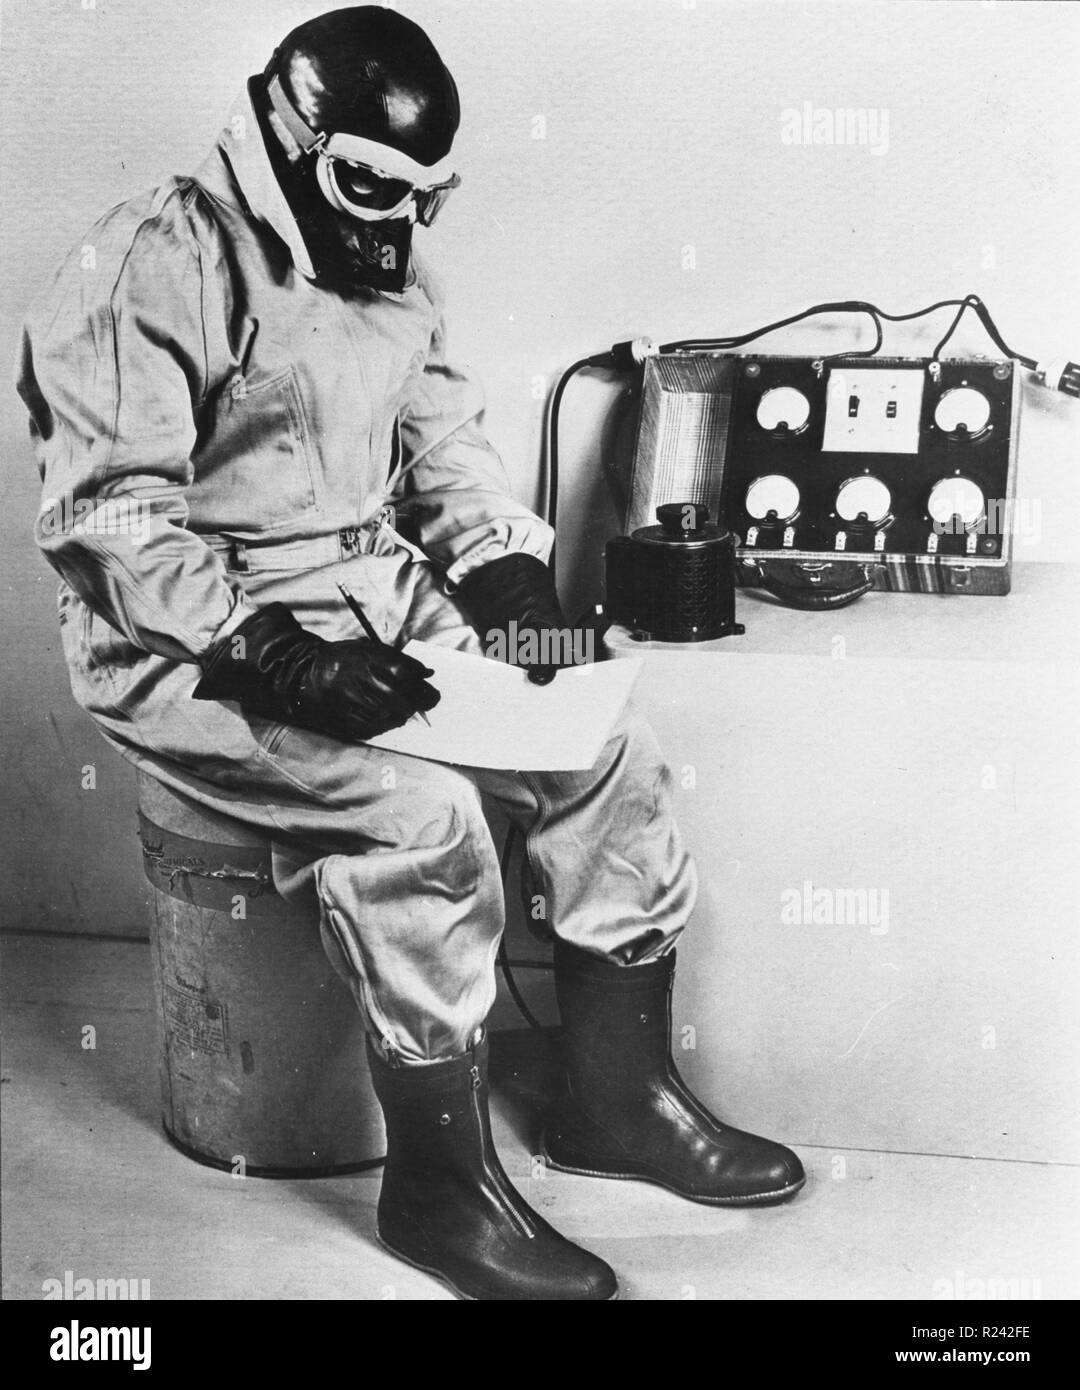 Photographie de l'essai de 12 000 General Electric électrique avec combinaisons de vol pour l'US Air Corps dans une chambre froide. Datée 1941 Banque D'Images